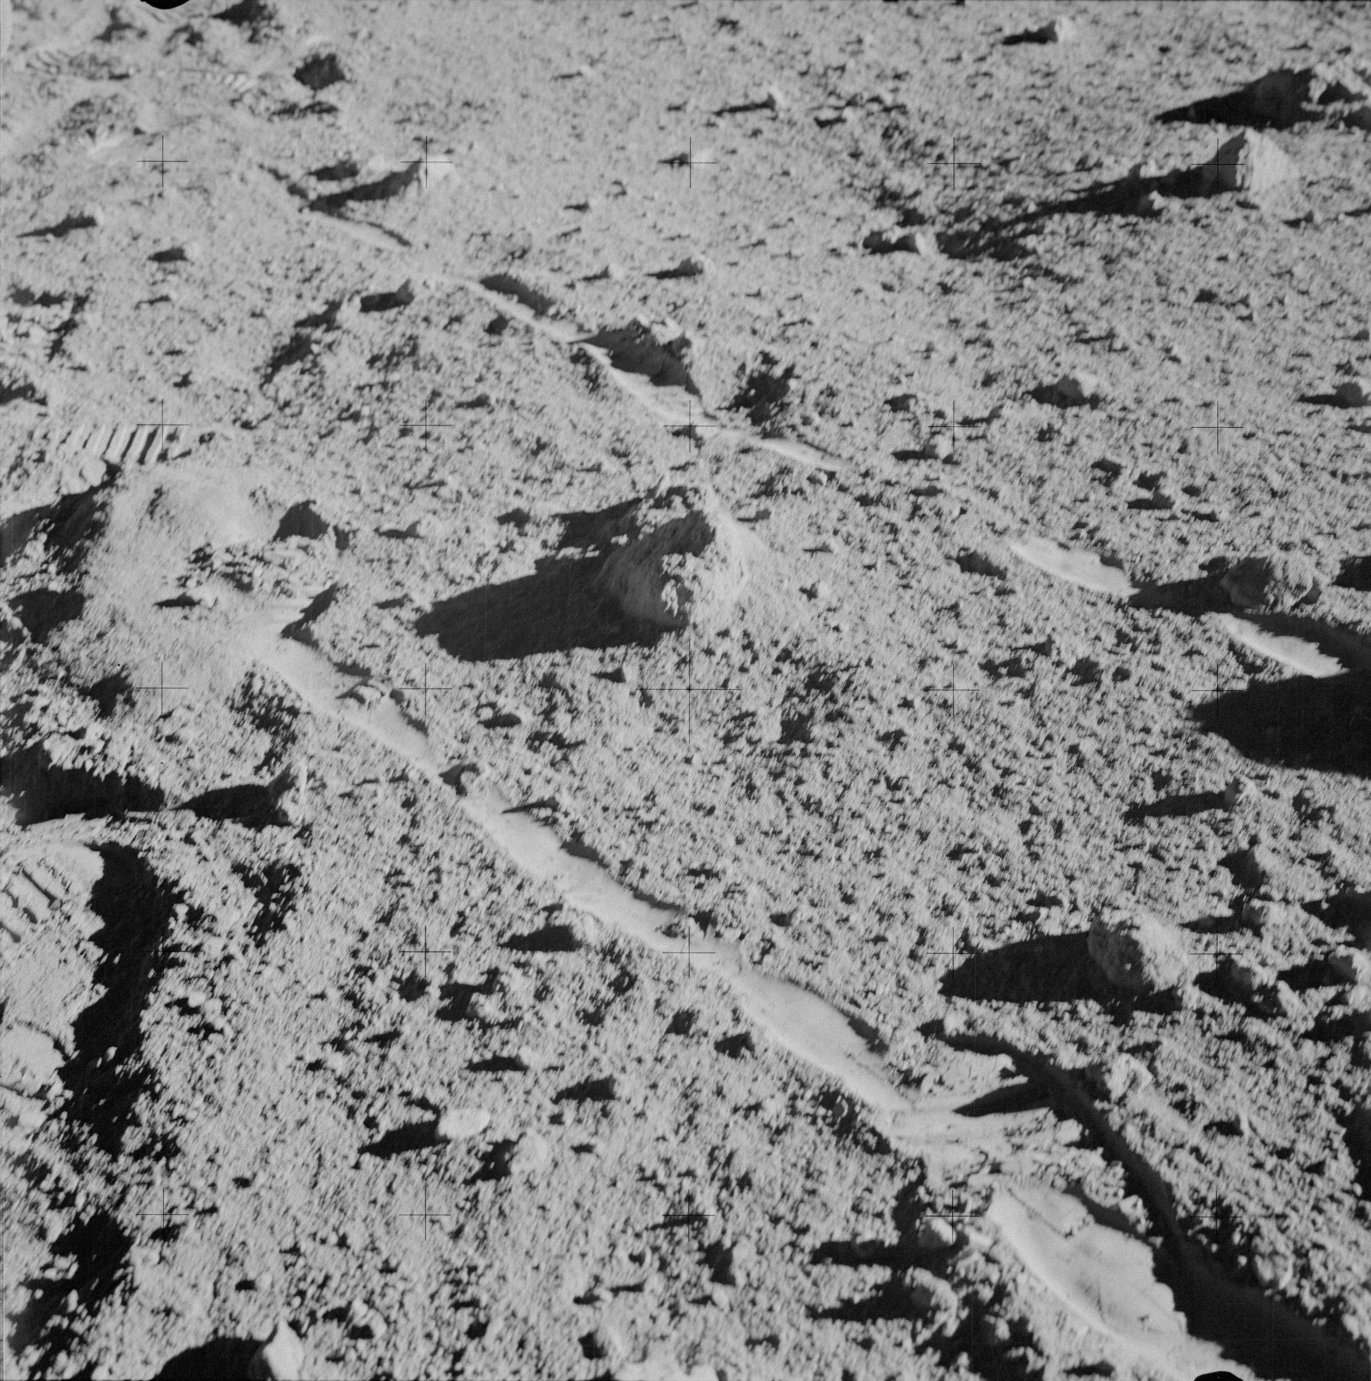 चंद्रावर पृथ्वीवरील 4 अब्ज वर्ष जुना खडक सापडला: सिद्धांतवादी काय म्हणतात? 5